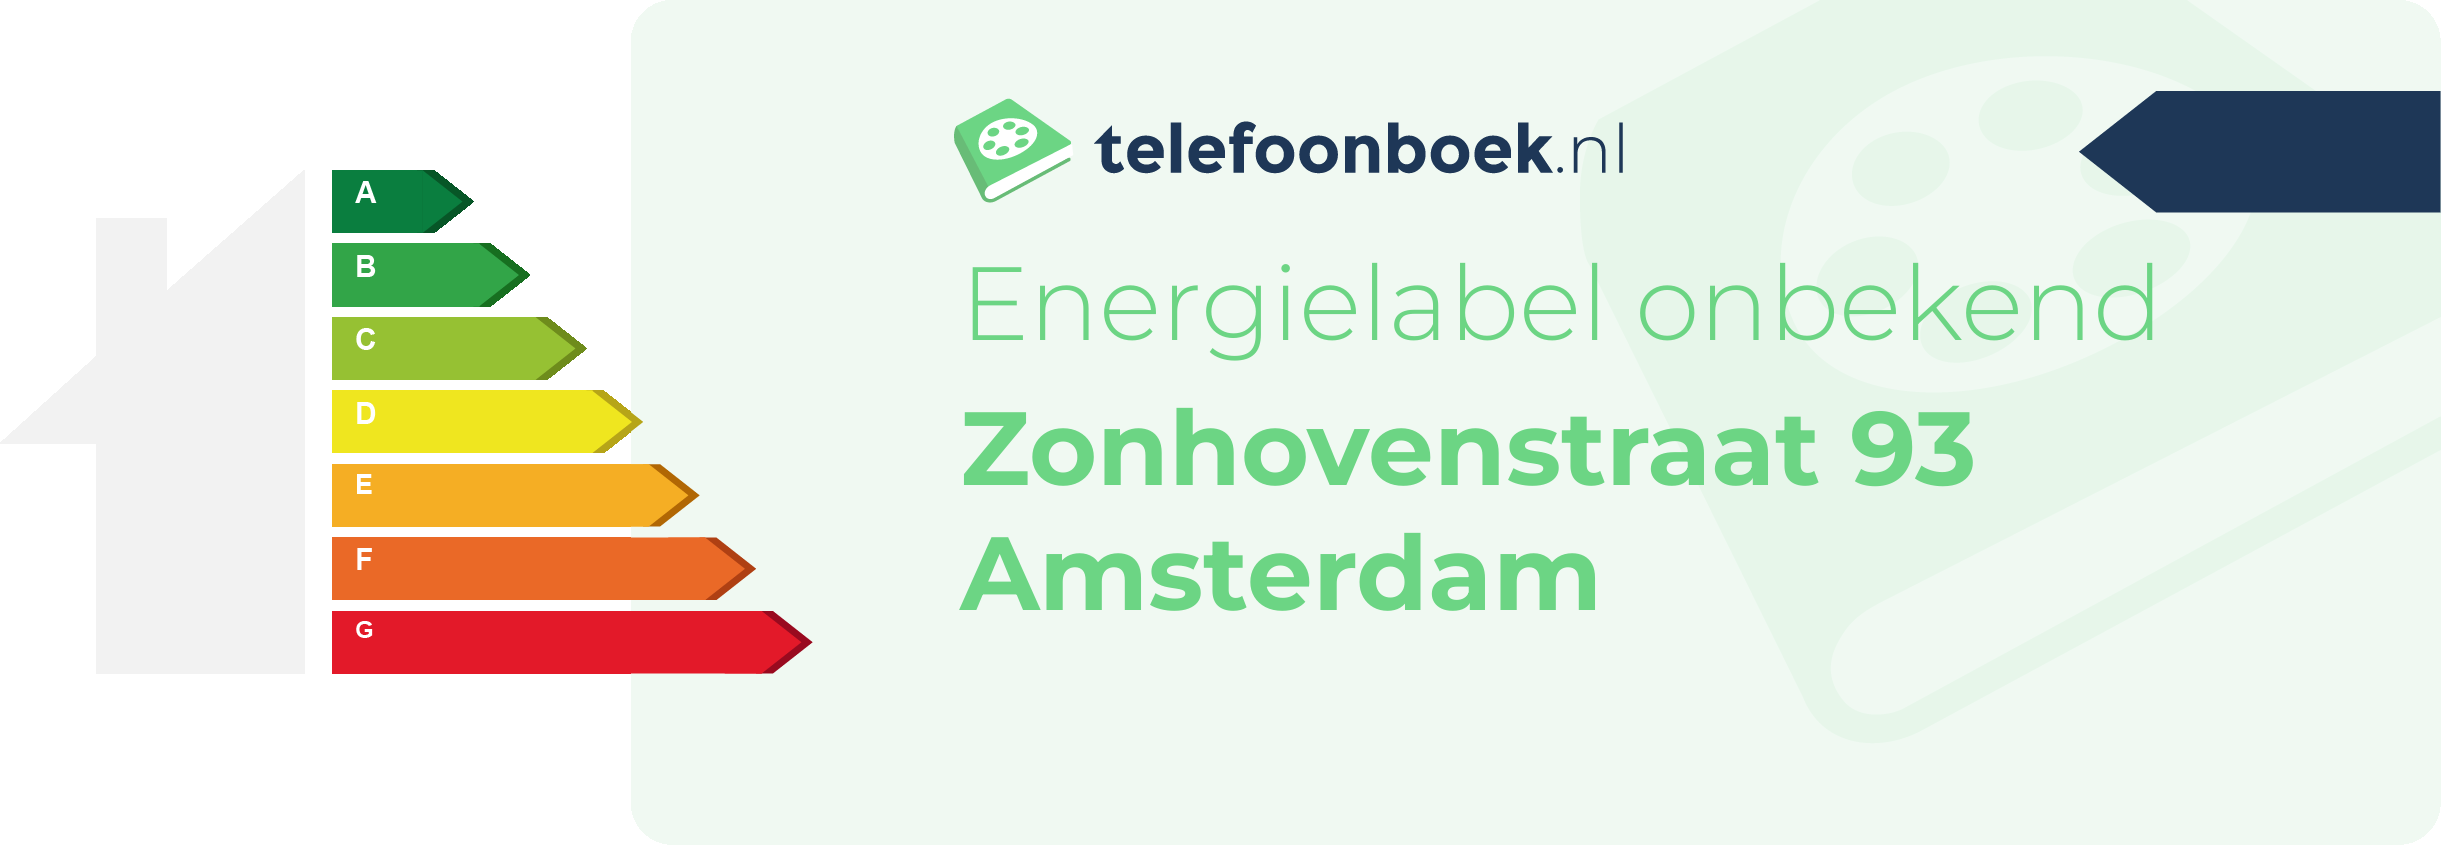 Energielabel Zonhovenstraat 93 Amsterdam